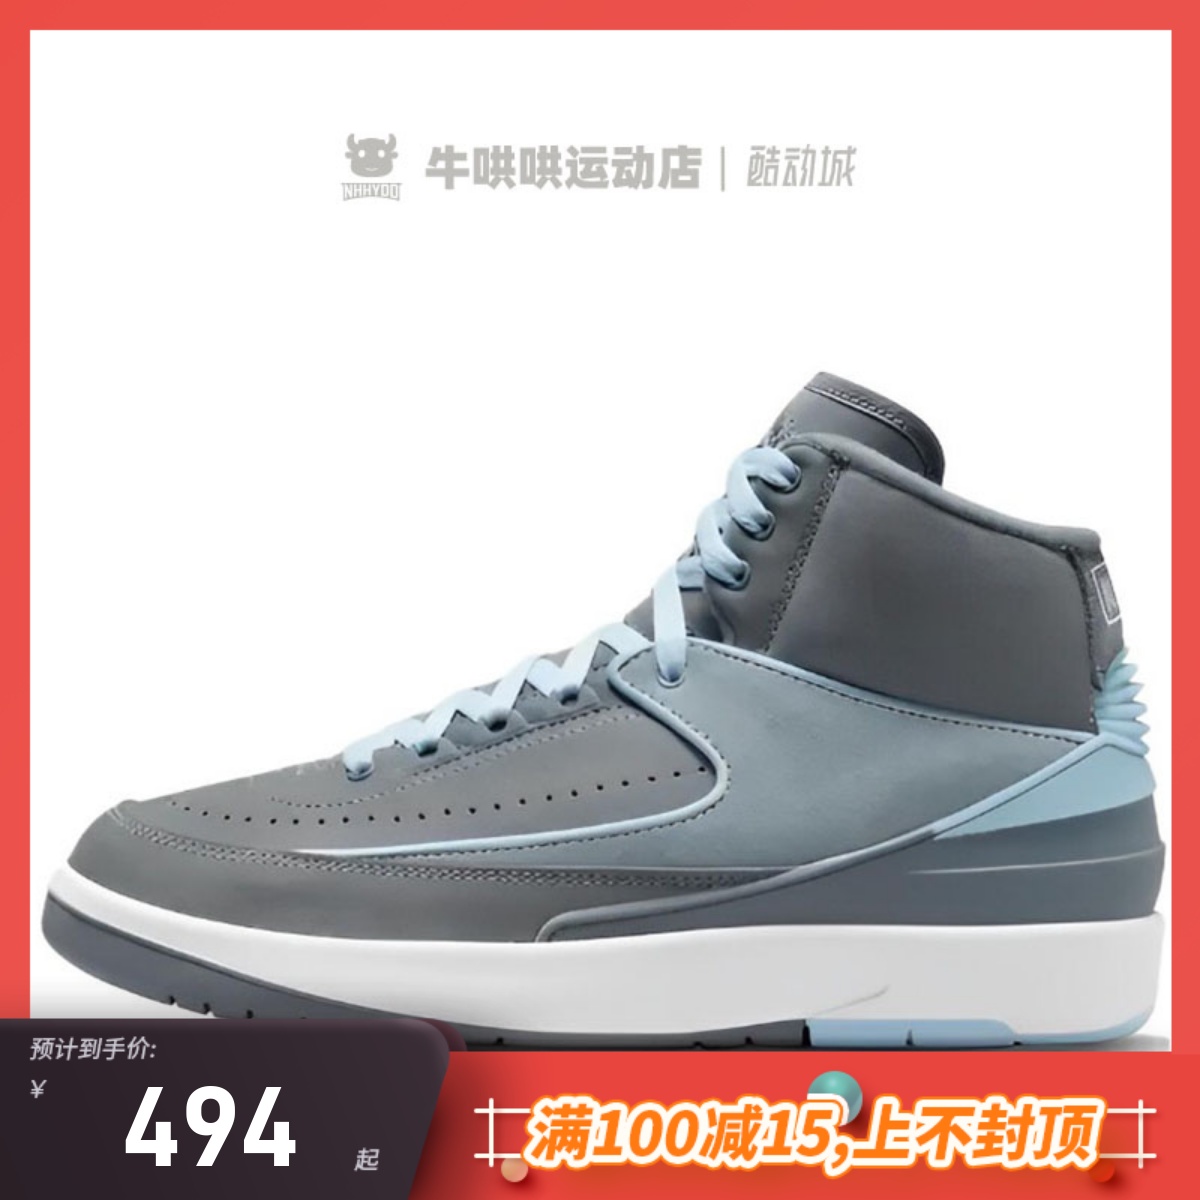 牛哄哄 Air Jordan 2 Cool Grey AJ12女子银灰色篮球鞋FB8871-041